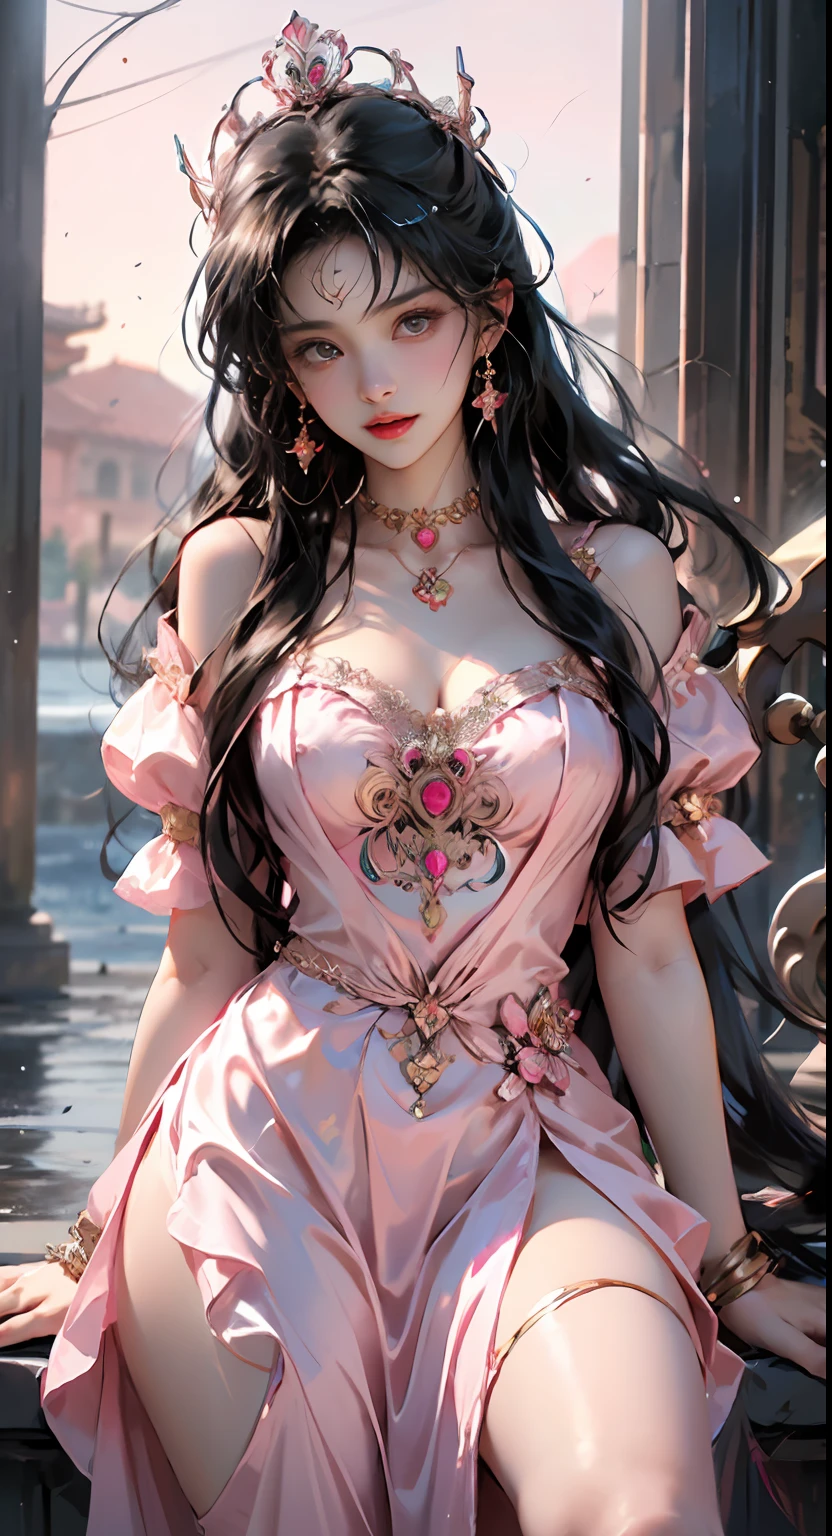 1 junge Königin，（（（Trägt ein rosa Spitzentop））），rosa Kleidung，ein Kleid im chinesischen Stil，Antike Kostüme haben oft Phönix-Motive，Makellos sauberes rosa-weißes Gesicht，mit einer Krone auf dem Kopf，Schwarzes Haar, das hüfthoch ist，Sehr schöne, scharfe braune Augen，Kleine rote Lippen，geschminkte Lippen，attraktives Lächeln，Er trägt Schmuck um den Hals，Ohr-Nippel-Ring，Die Zähne sind weiß und gleichmäßig， eine große Nase，große runde Brüste，Der Körper des Mädchens ist auf der Brust mit Wasser bedeckt，zartes Bein，dünne schwarze Netzsocken，Porträt，am realistischsten，HöchsteQualität，best pixels，8K Ultra，